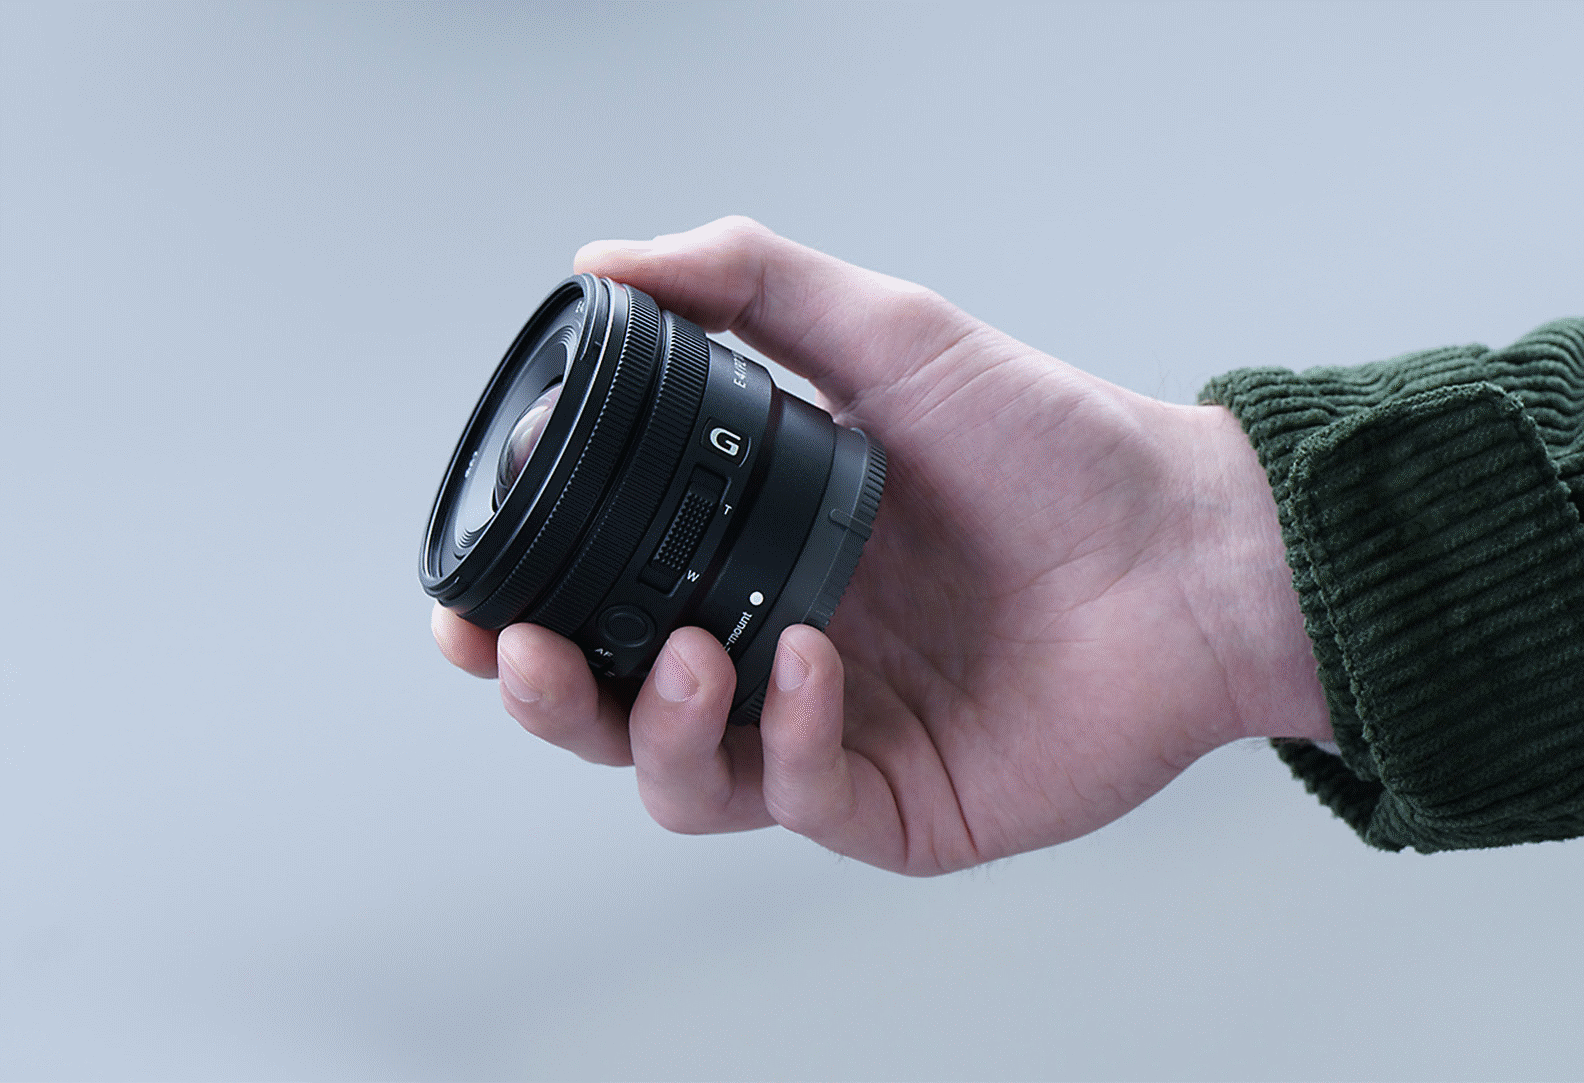 Slika osobe koja drži objektiv E PZ 10-20mm F4 G, slika pokazuje da je objektiv dovoljno malen da stane u dlan